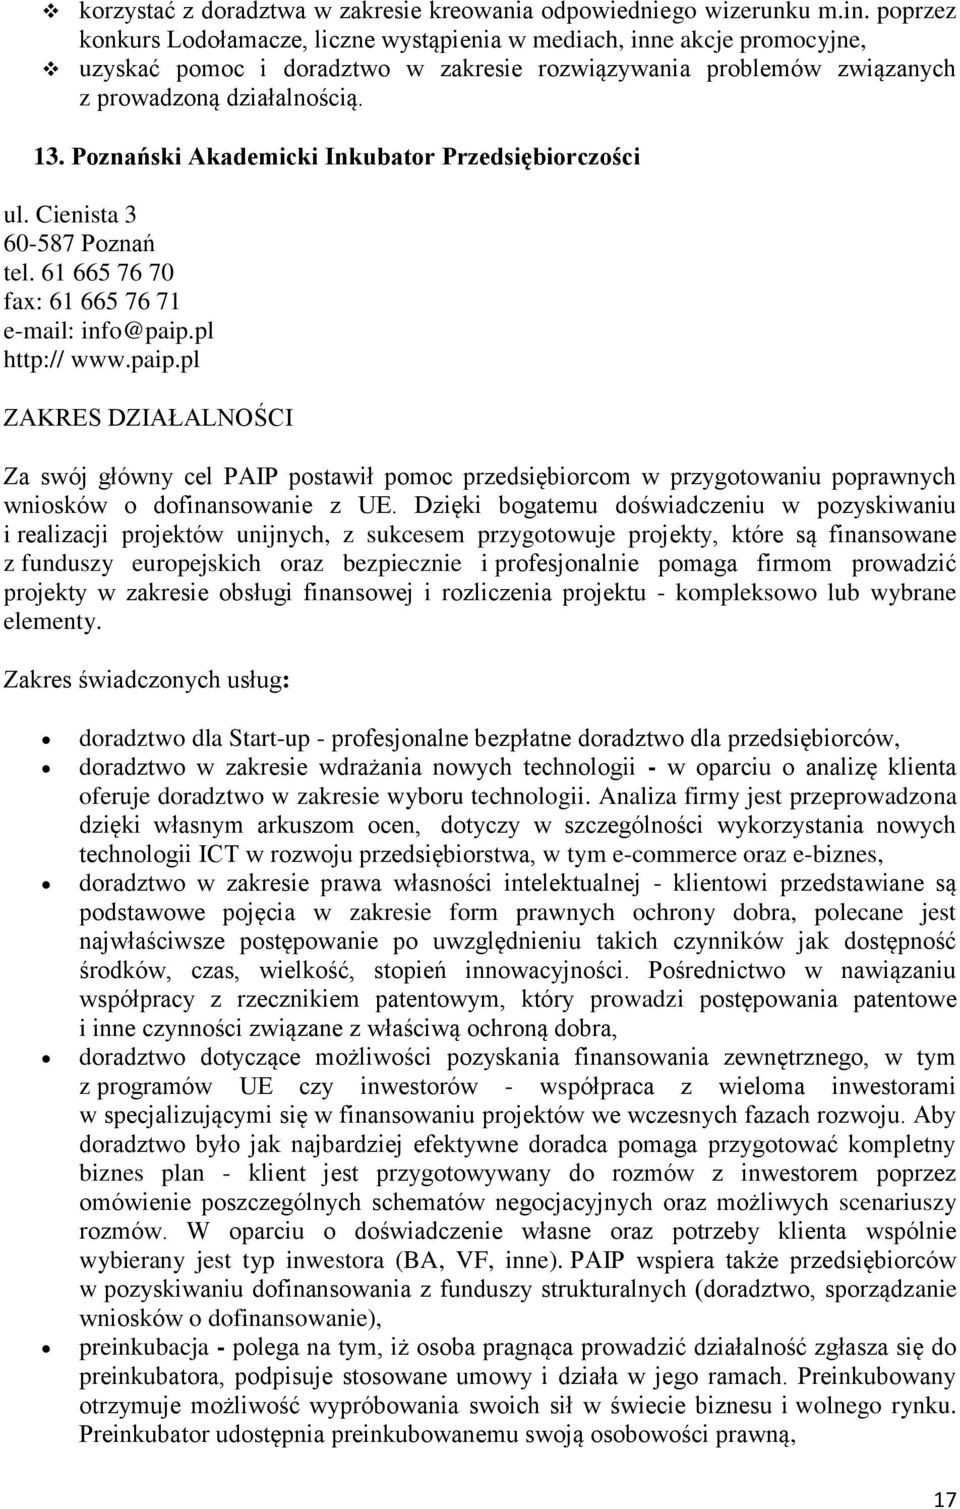 Poznański Akademicki Inkubator Przedsiębiorczości ul. Cienista 3 60-587 Poznań tel. 61 665 76 70 fax: 61 665 76 71 e-mail: info@paip.